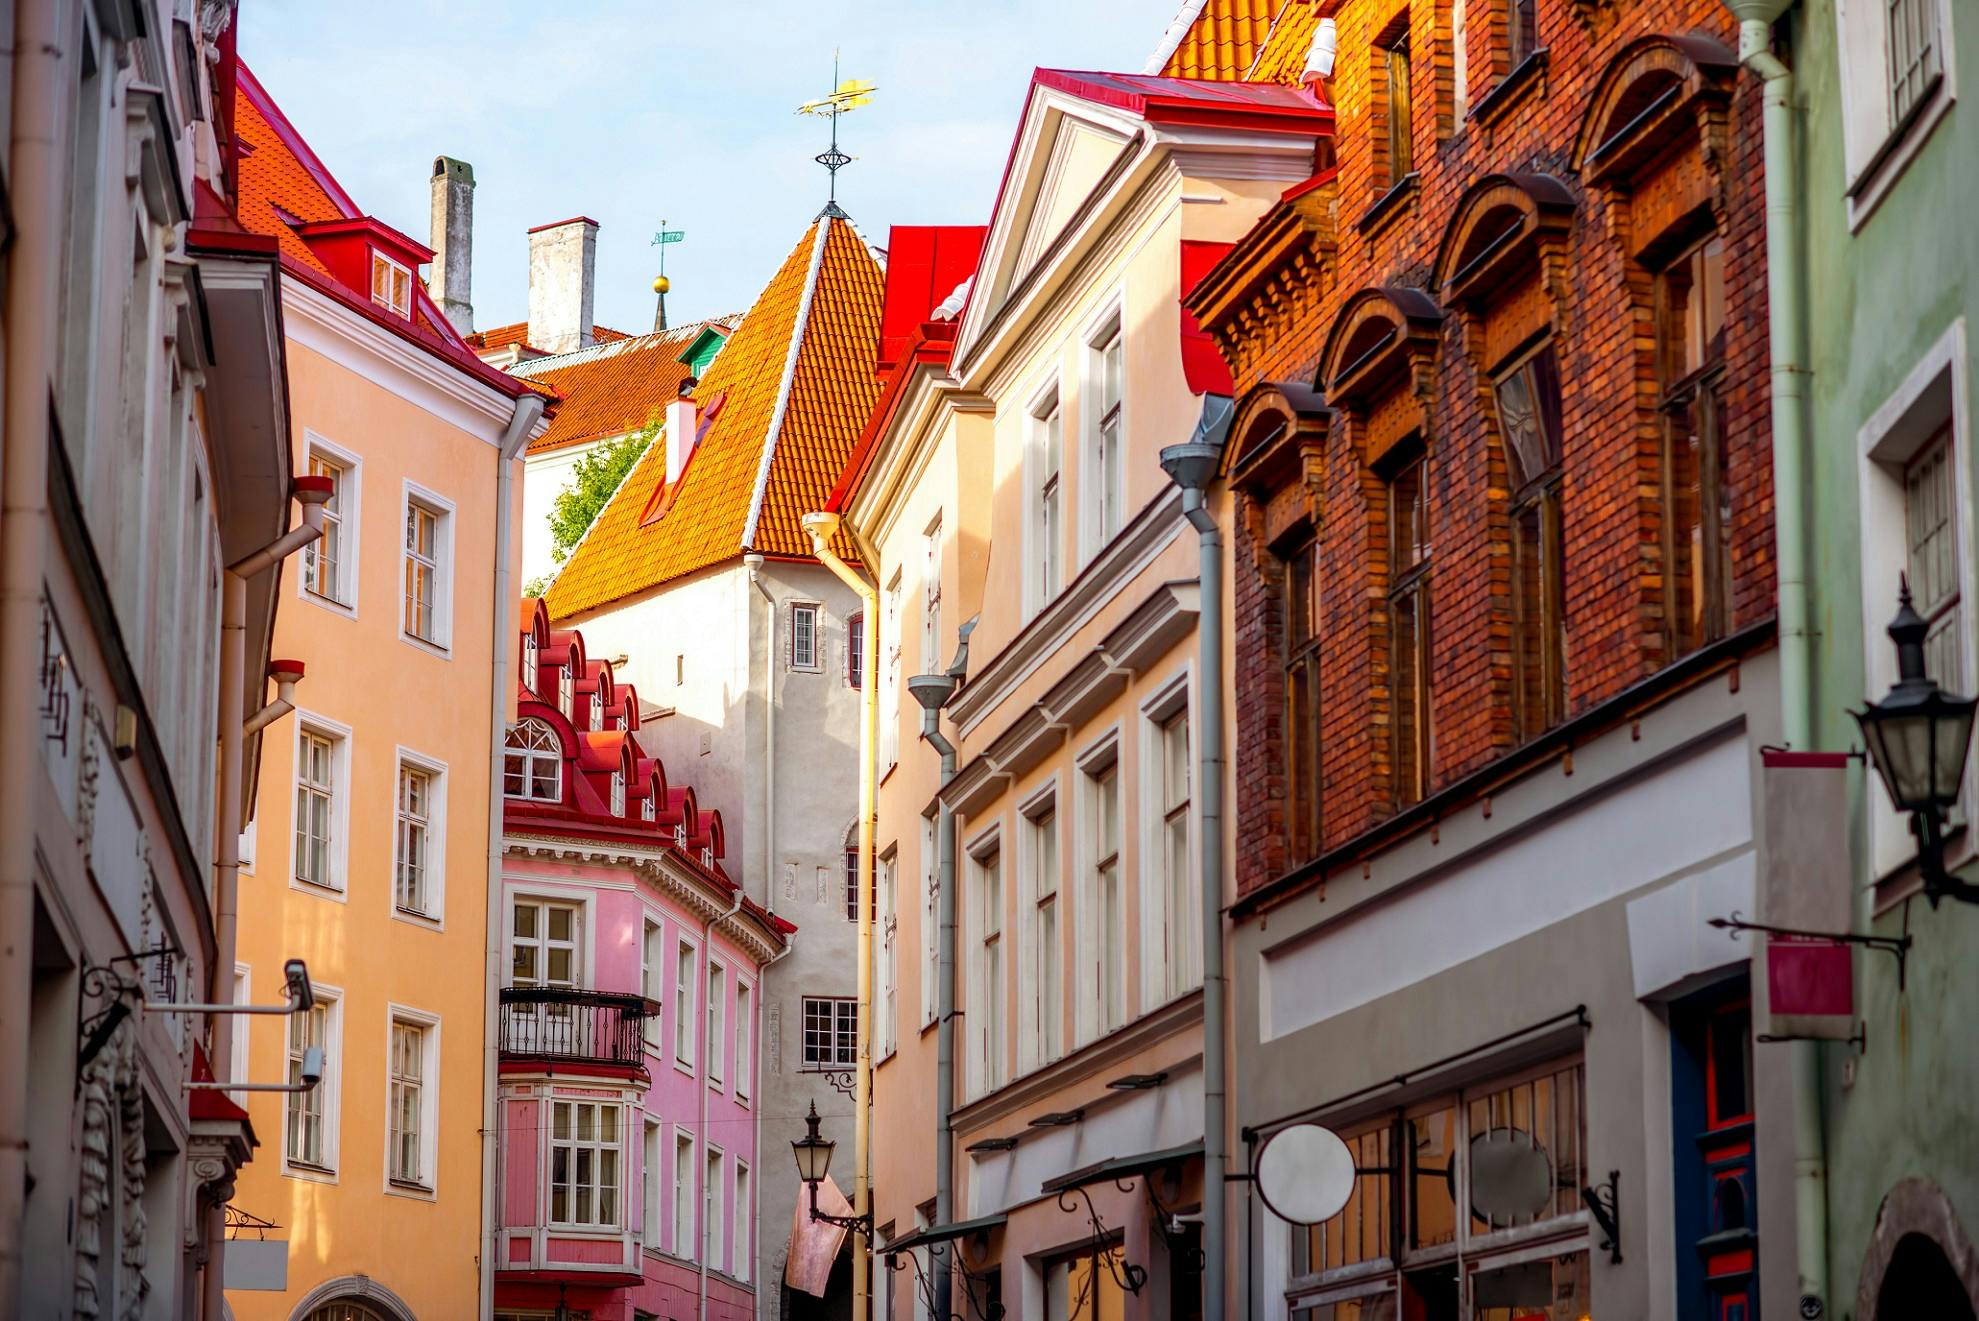 Privéwandeling door de oude binnenstad van Tallinn